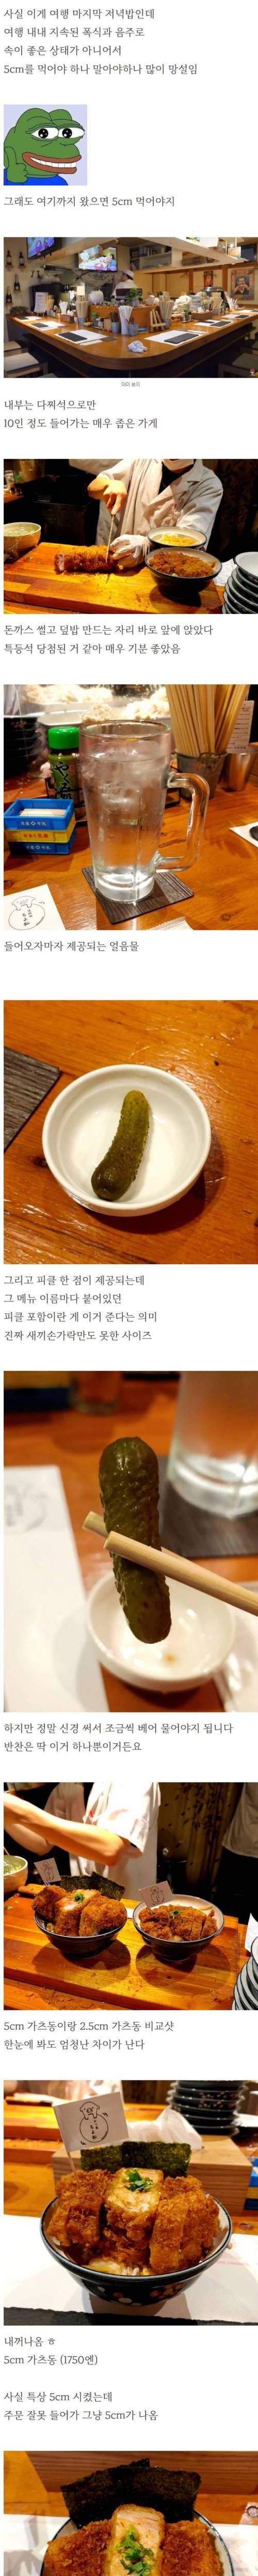 유튜브 나오던 5cm 돈까스 덮밥 후기.jpg